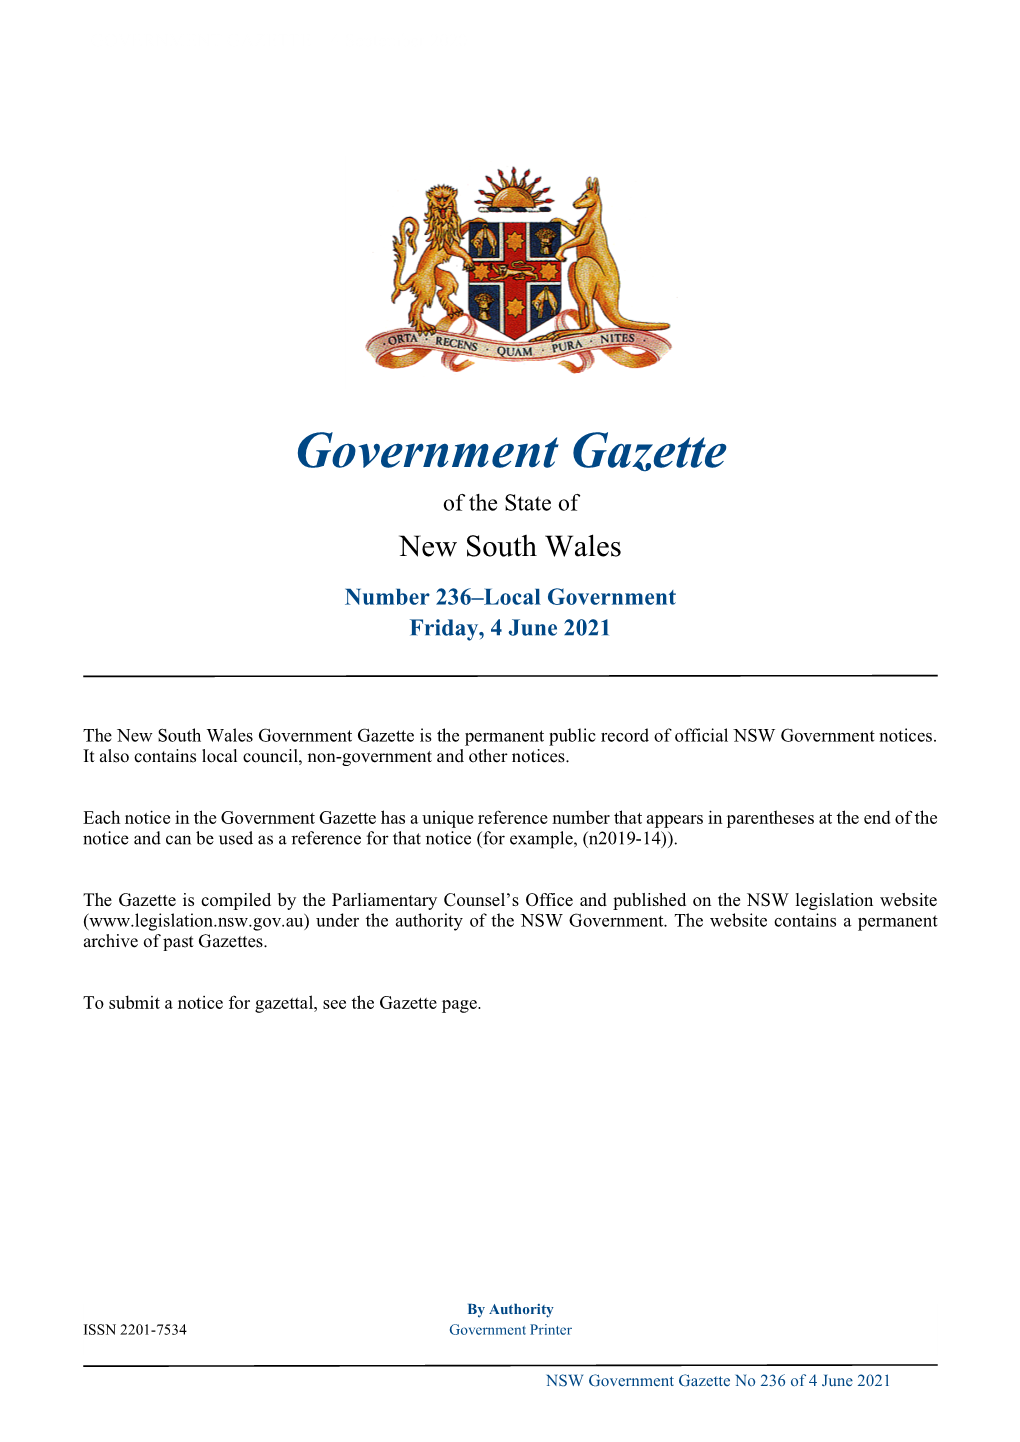 Government Gazette No 236 of Friday 4 June 2021